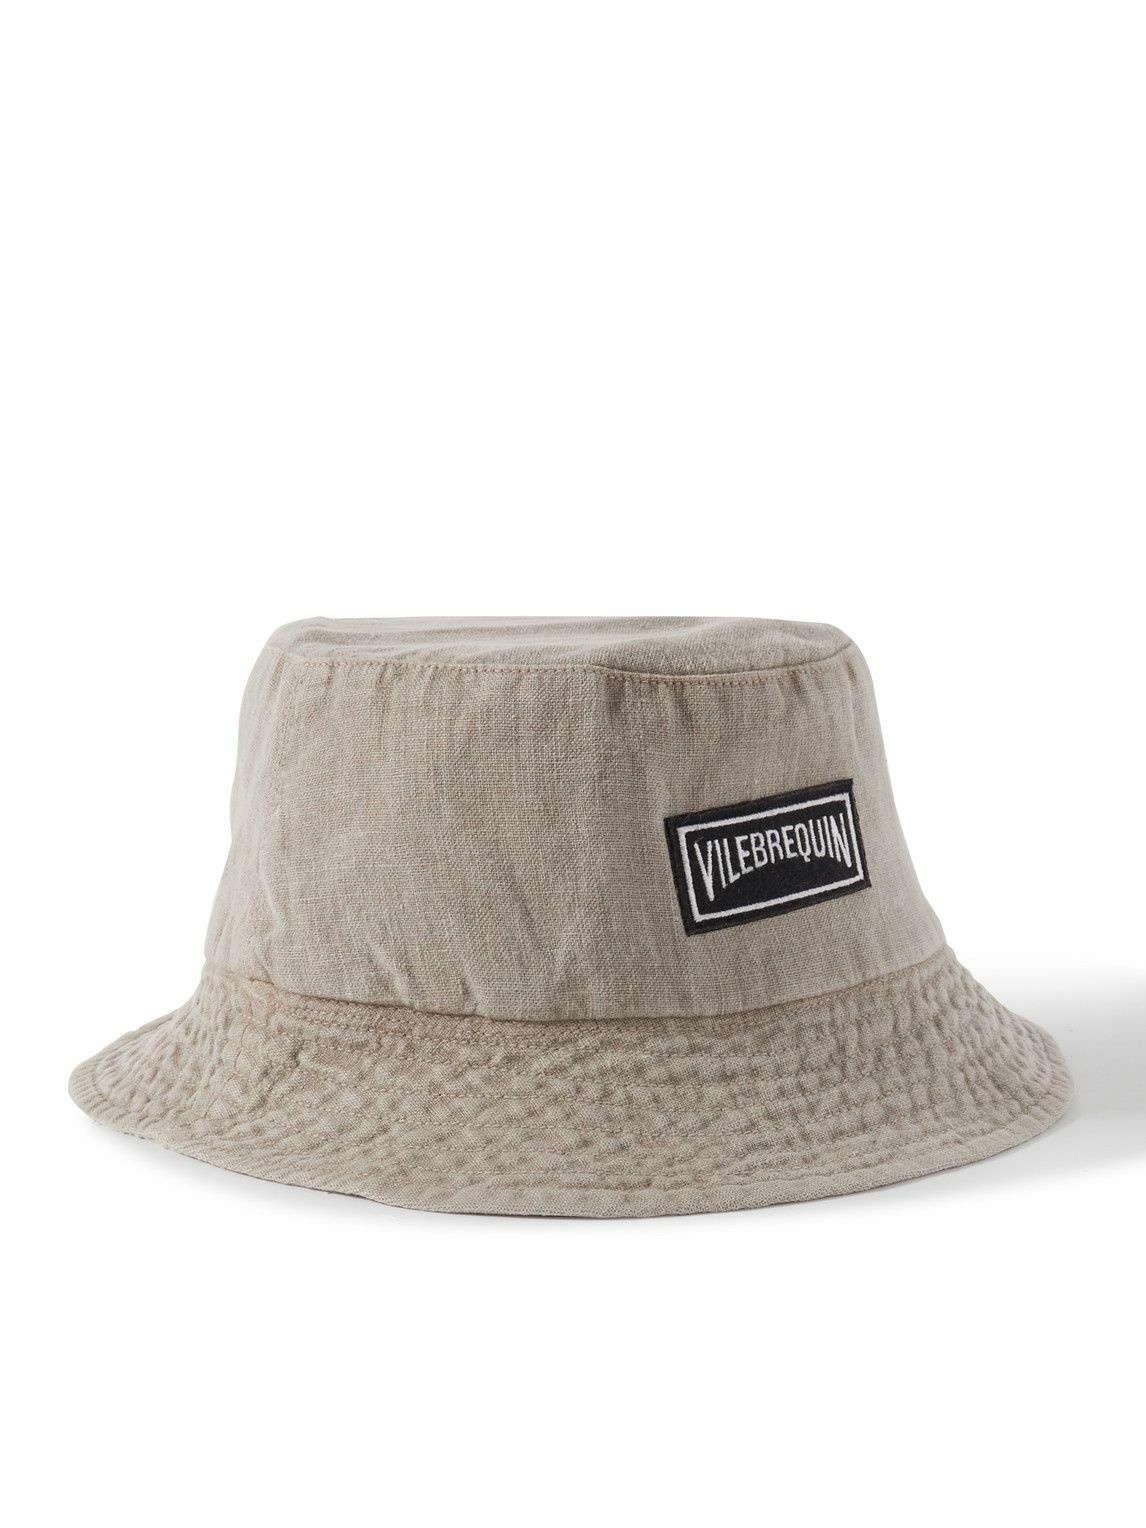 Vilebrequin - Logo-Appliquéd Linen Bucket Hat - Neutrals Vilebrequin